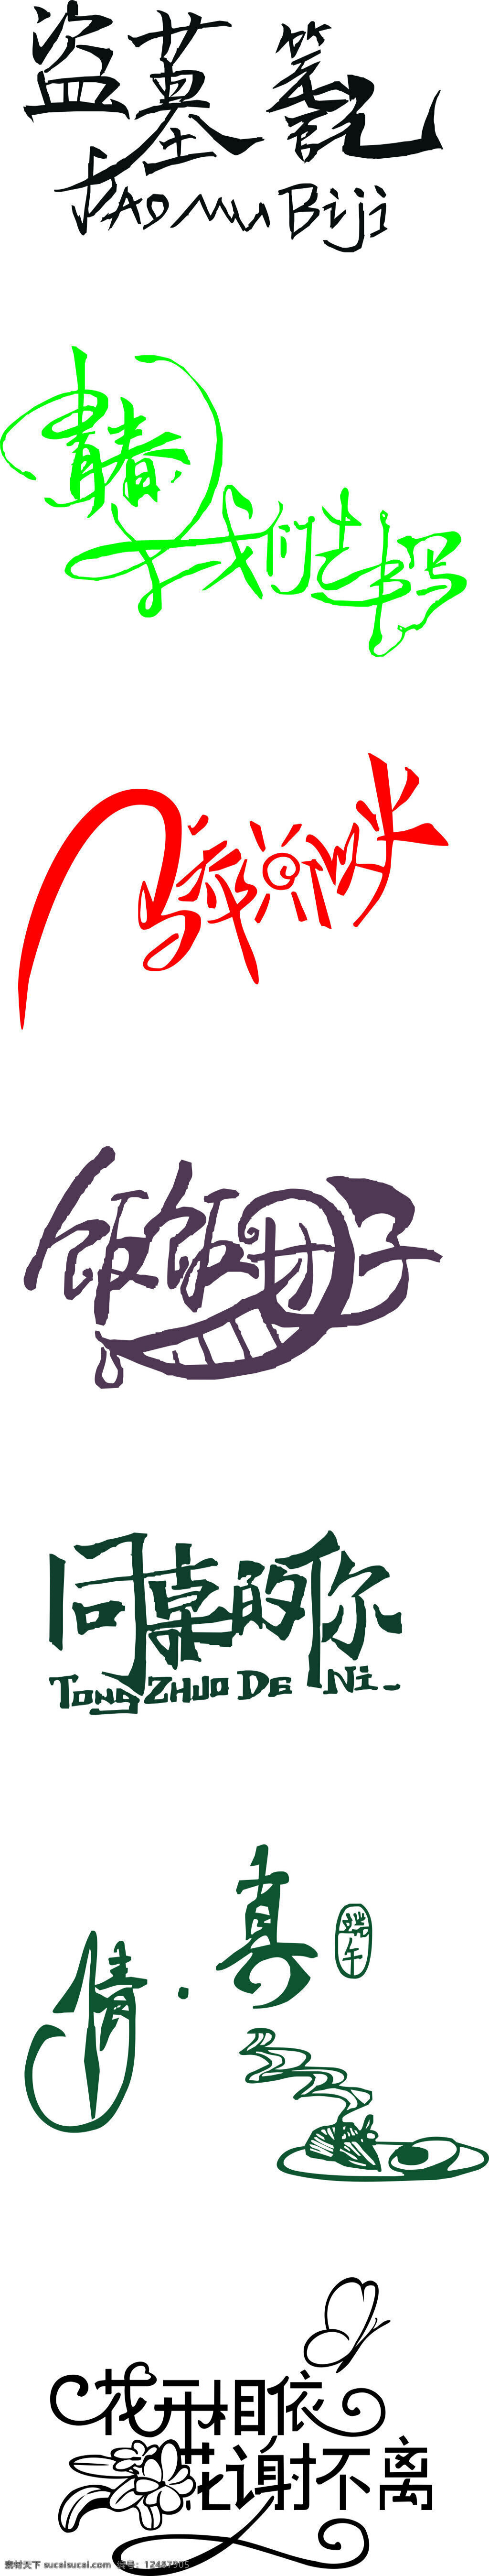 艺术字体 海报字 创意字 logo 创意美工字体 中国传统字体 字体设计 艺术字 美工字 卡通字体 立体字 白色